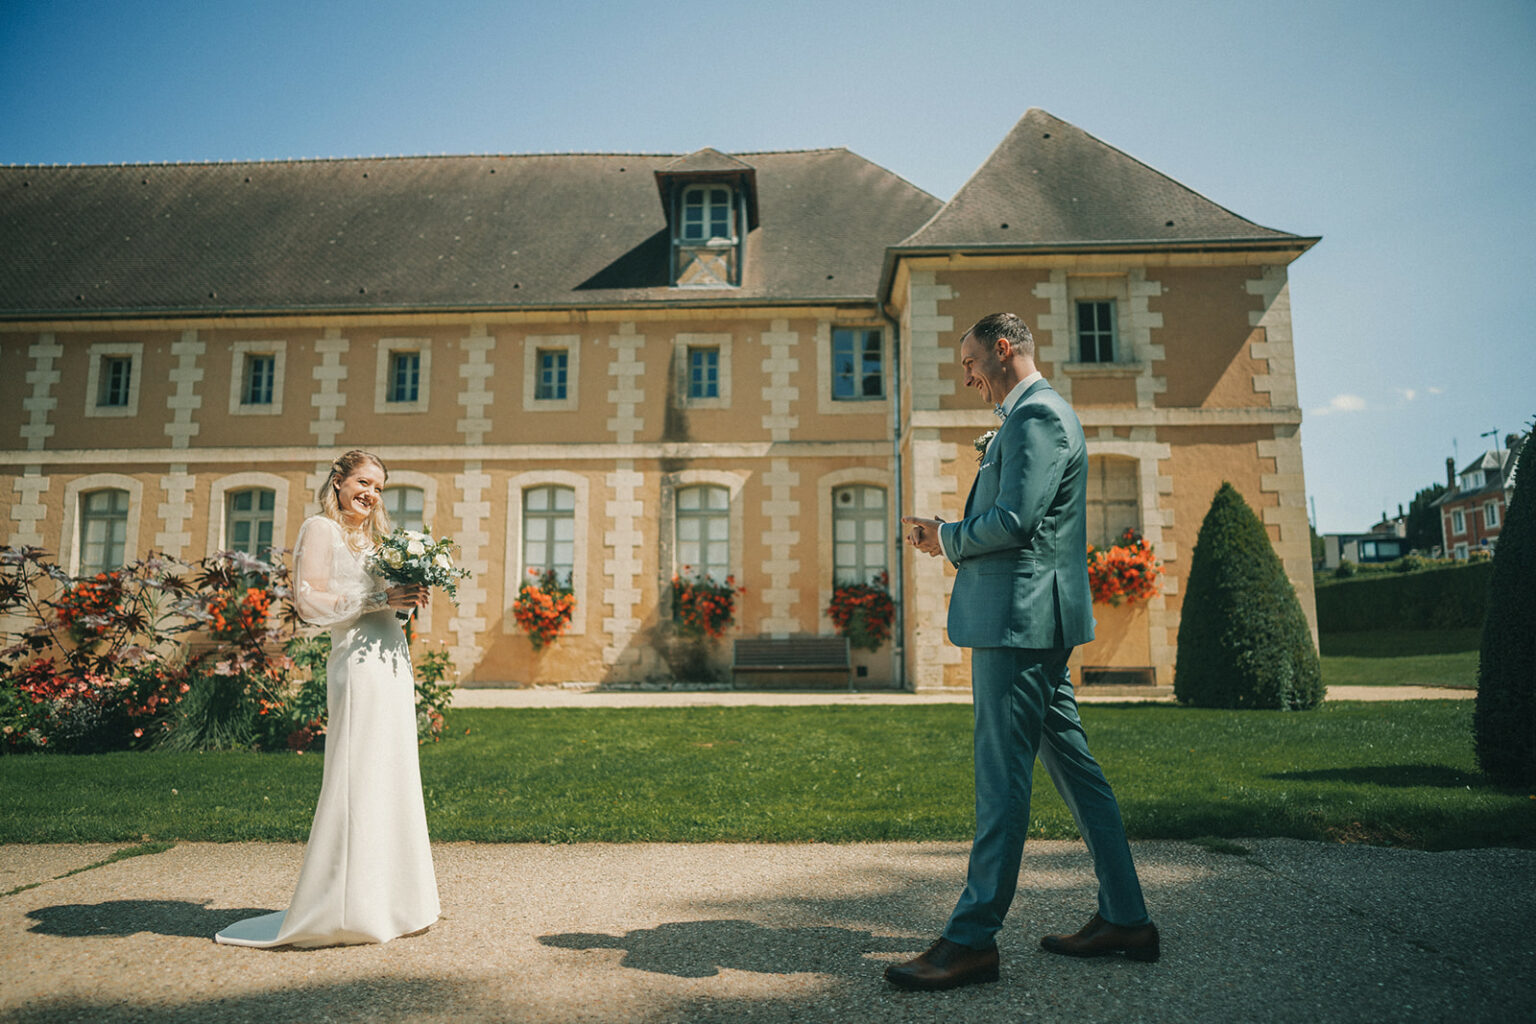 le mariage Fany et Jérémie à Evreux au jardin public par Alain Leprévost photographe vidéaste de mariage en Normandie